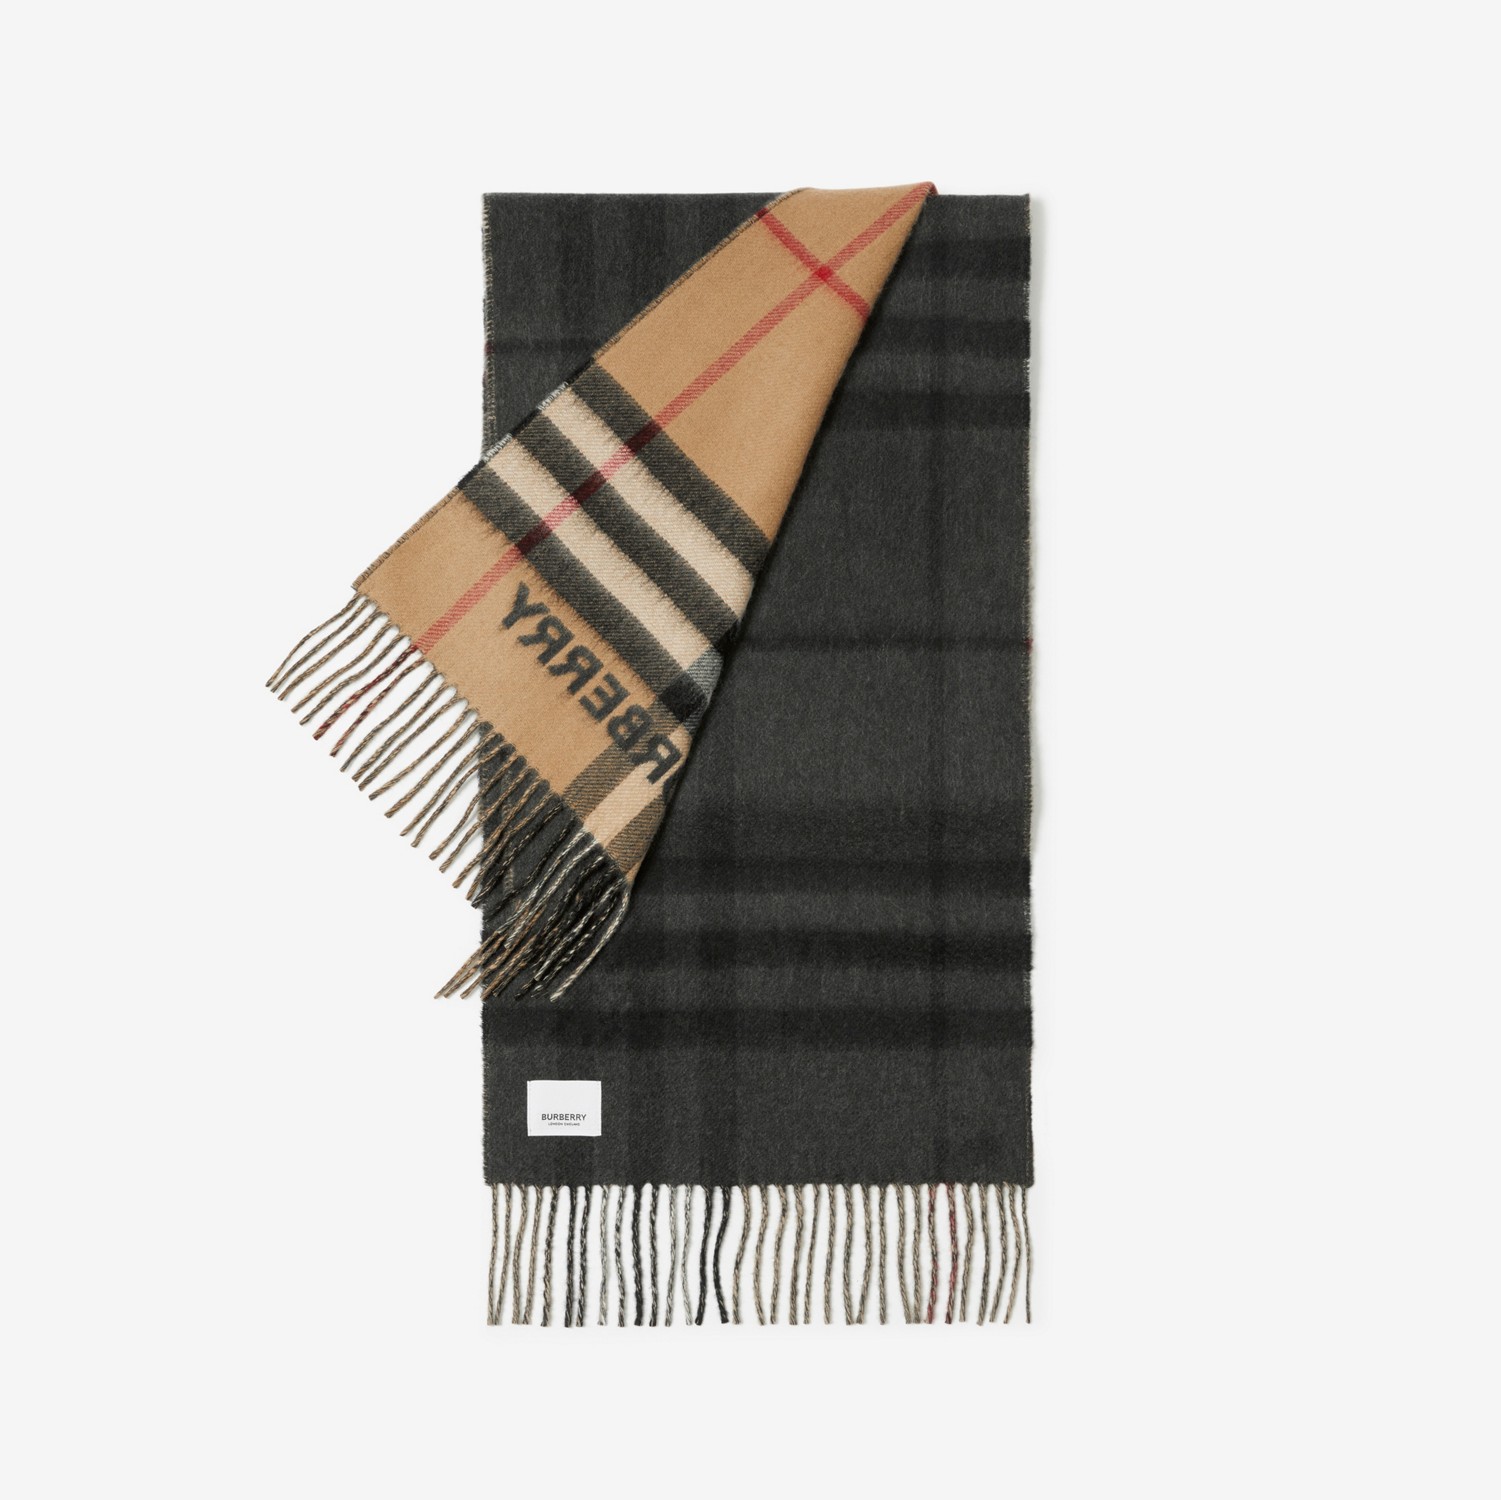 Sciarpa in cashmere con motivi tartan a contrasto (Beige Archivio/nero) | Sito ufficiale Burberry®